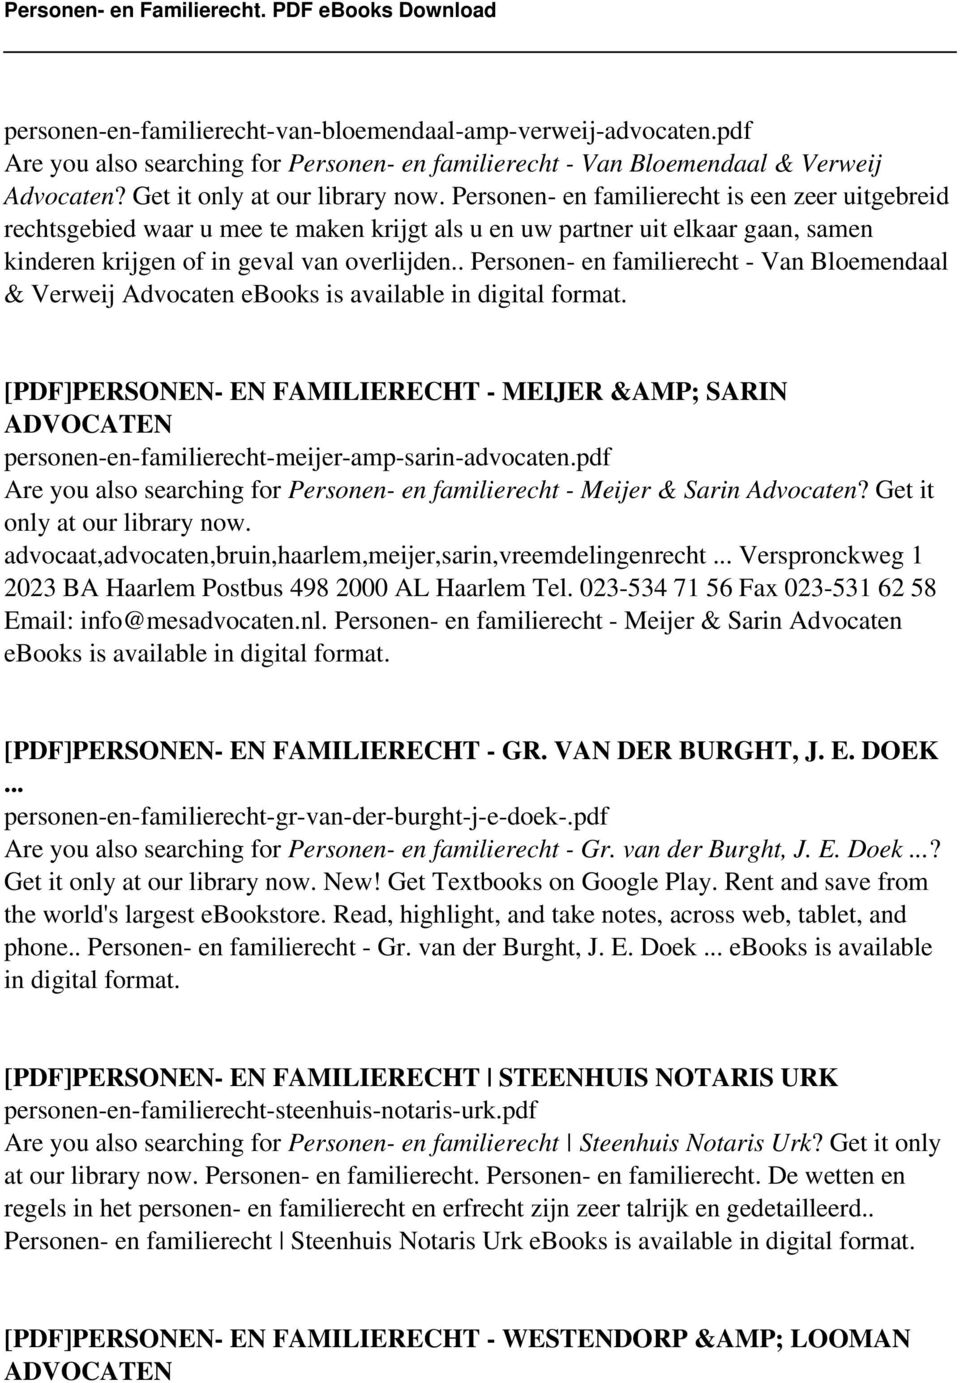 . Personen- en familierecht - Van Bloemendaal & Verweij Advocaten ebooks is available in digital format.